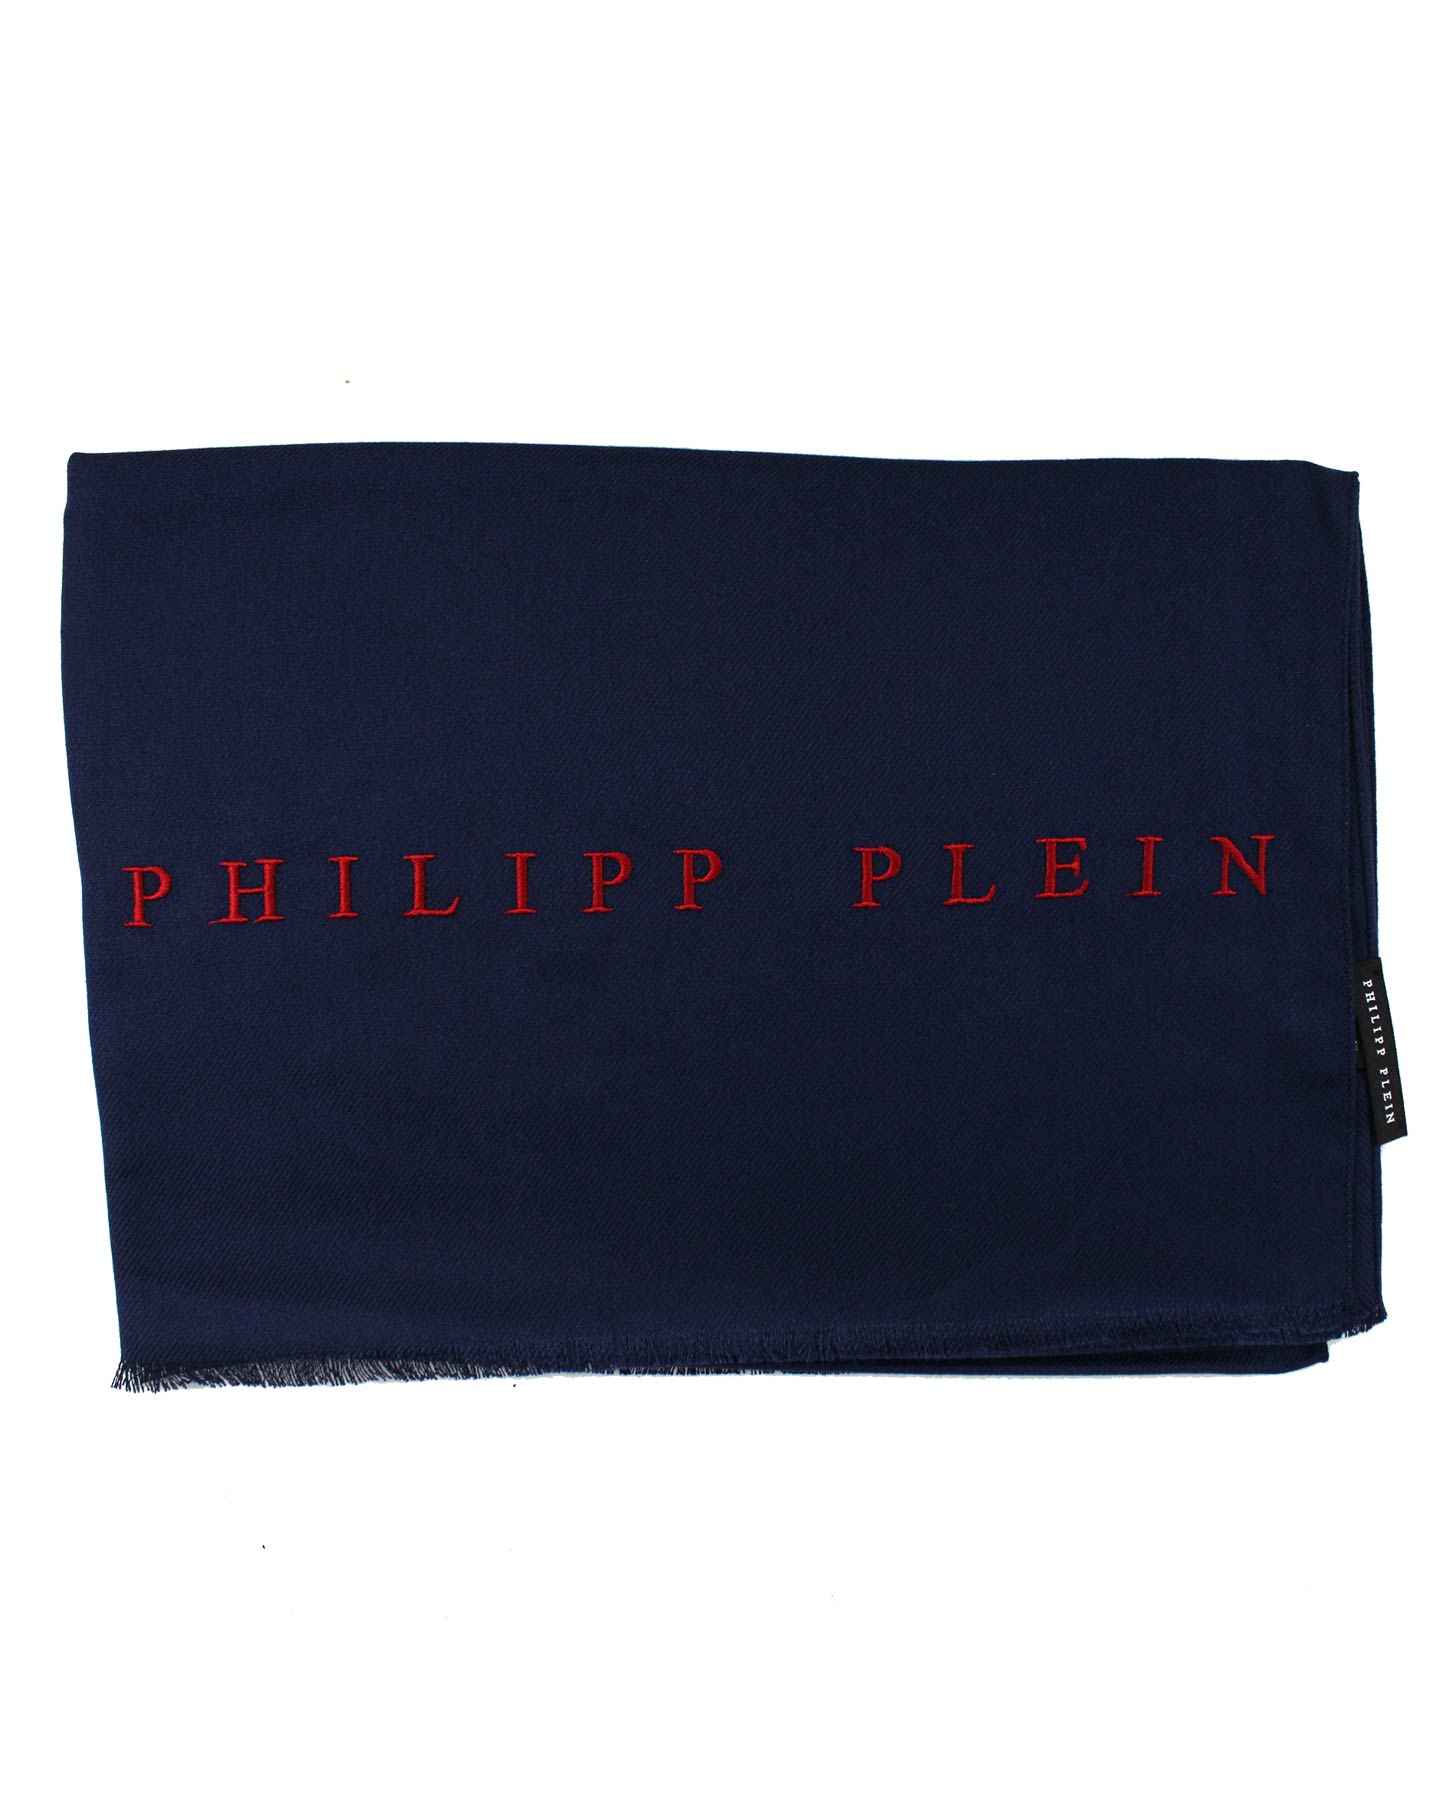 Philipp Plein Scarf Navy Red Logo 